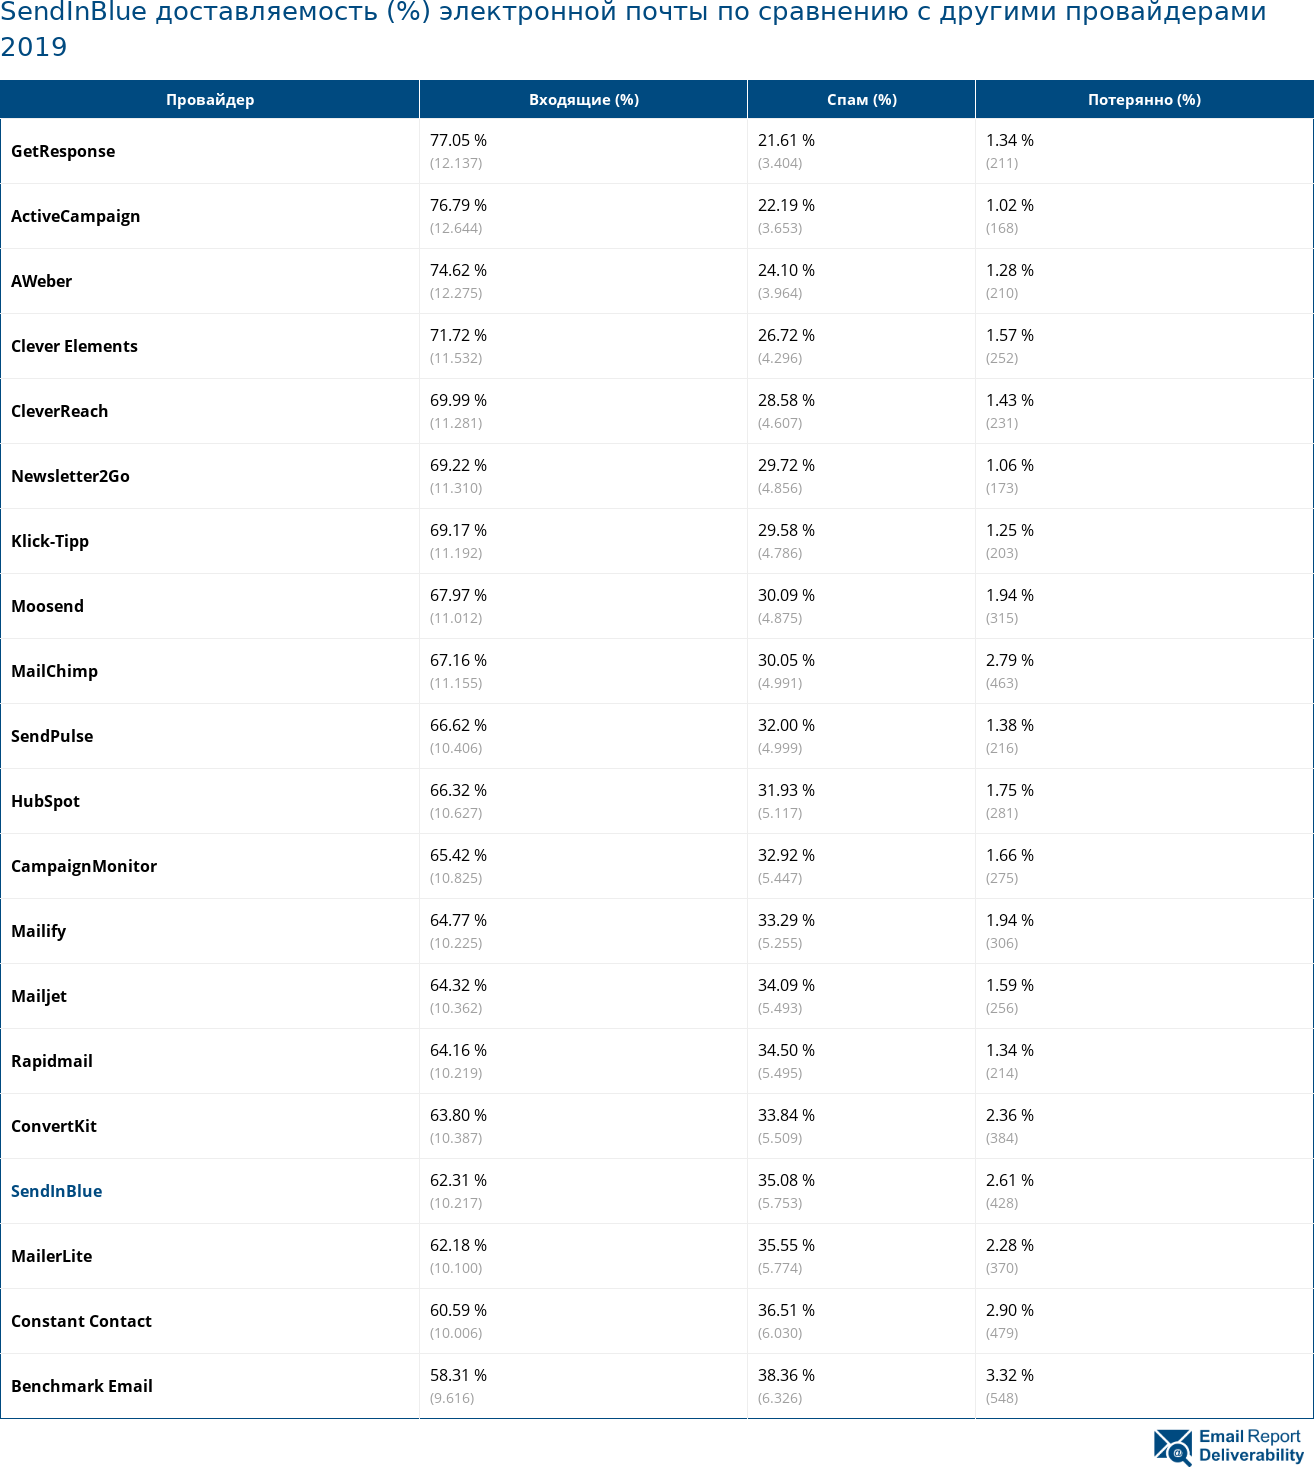 SendInBlue доставляемость (%) электронной почты по сравнению с другими провайдерами 2019